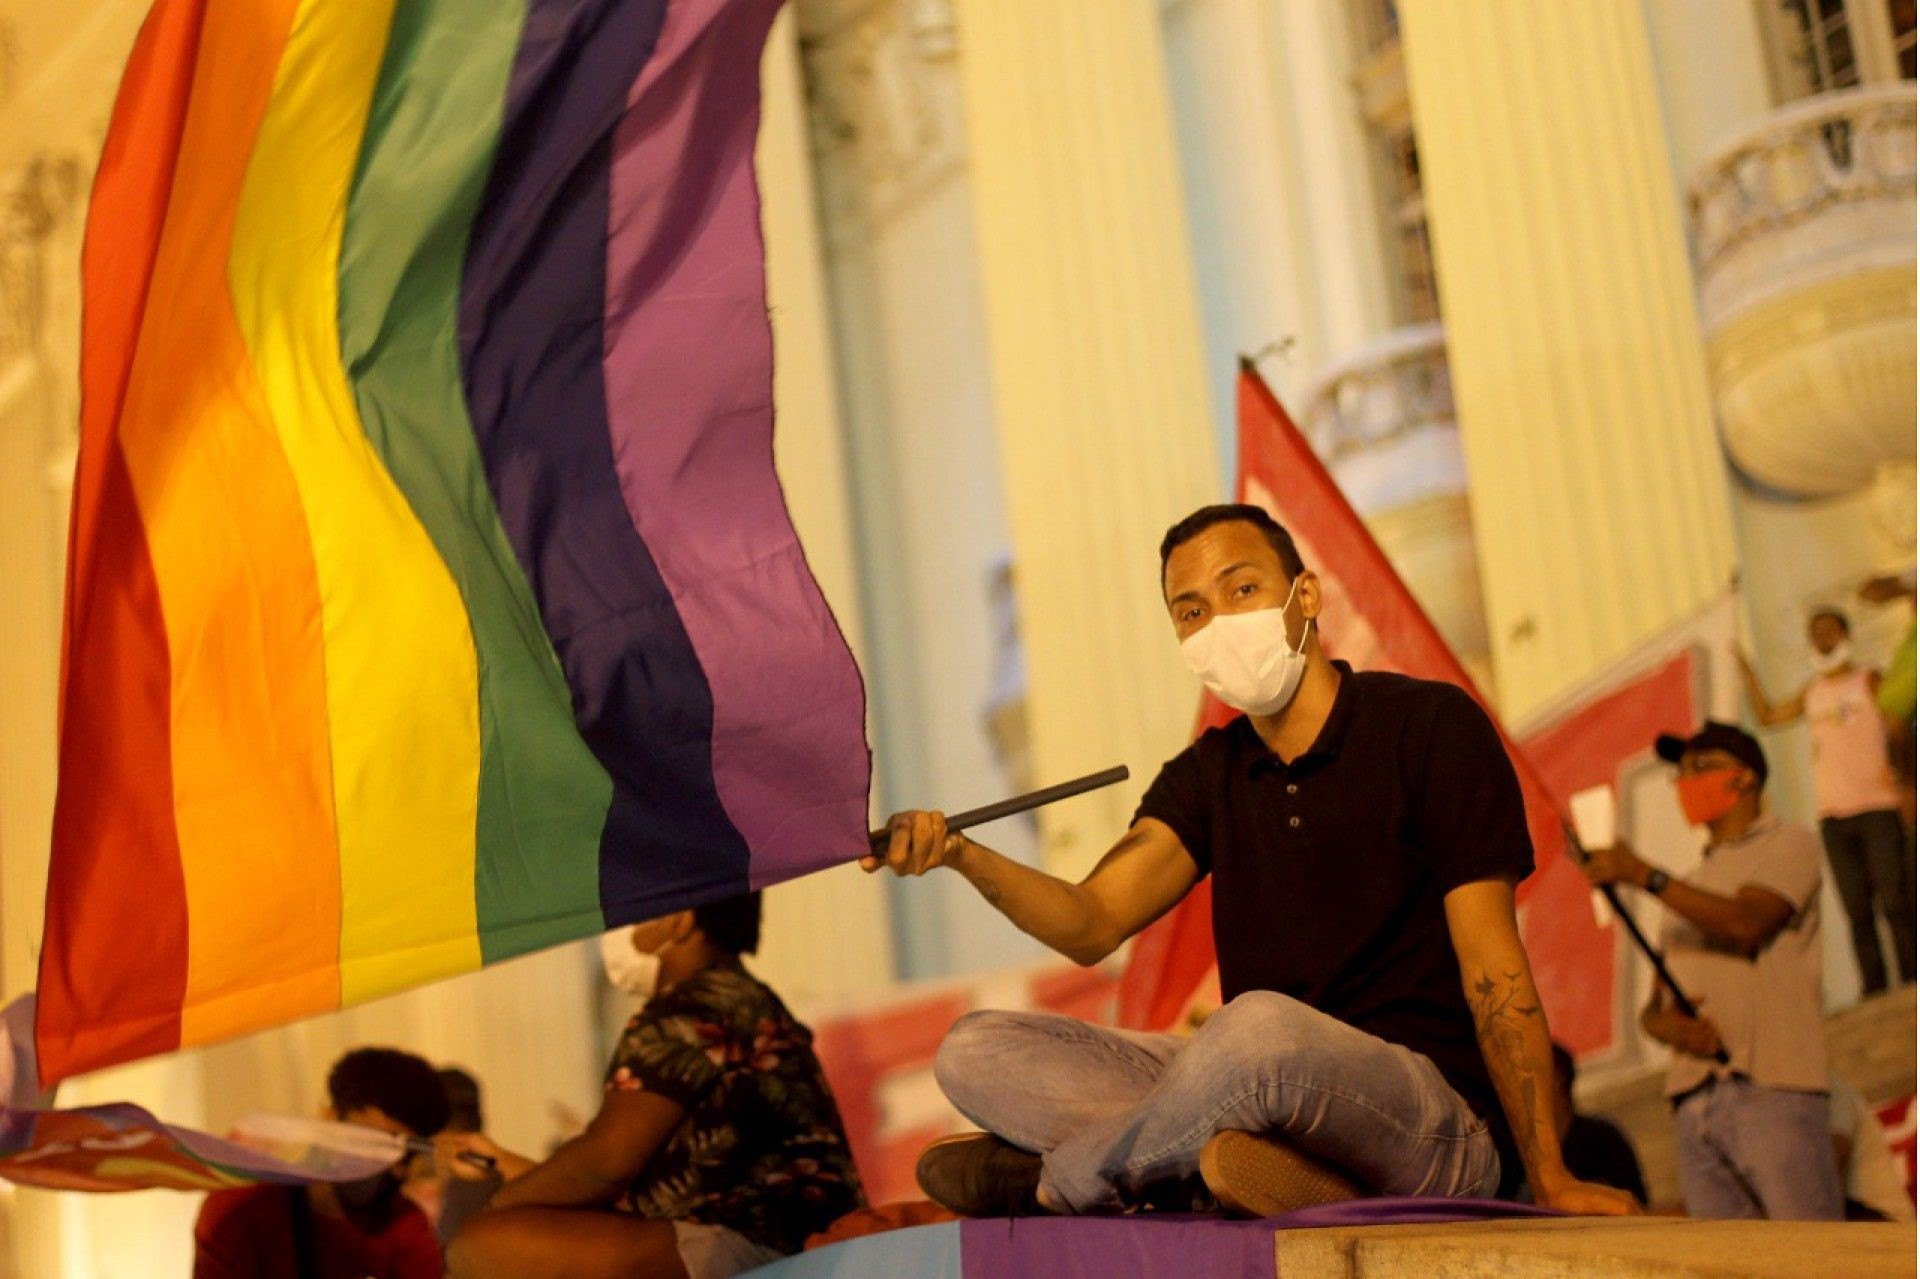 Governo cria Conselho Nacional dos Direitos LGBTQIA+